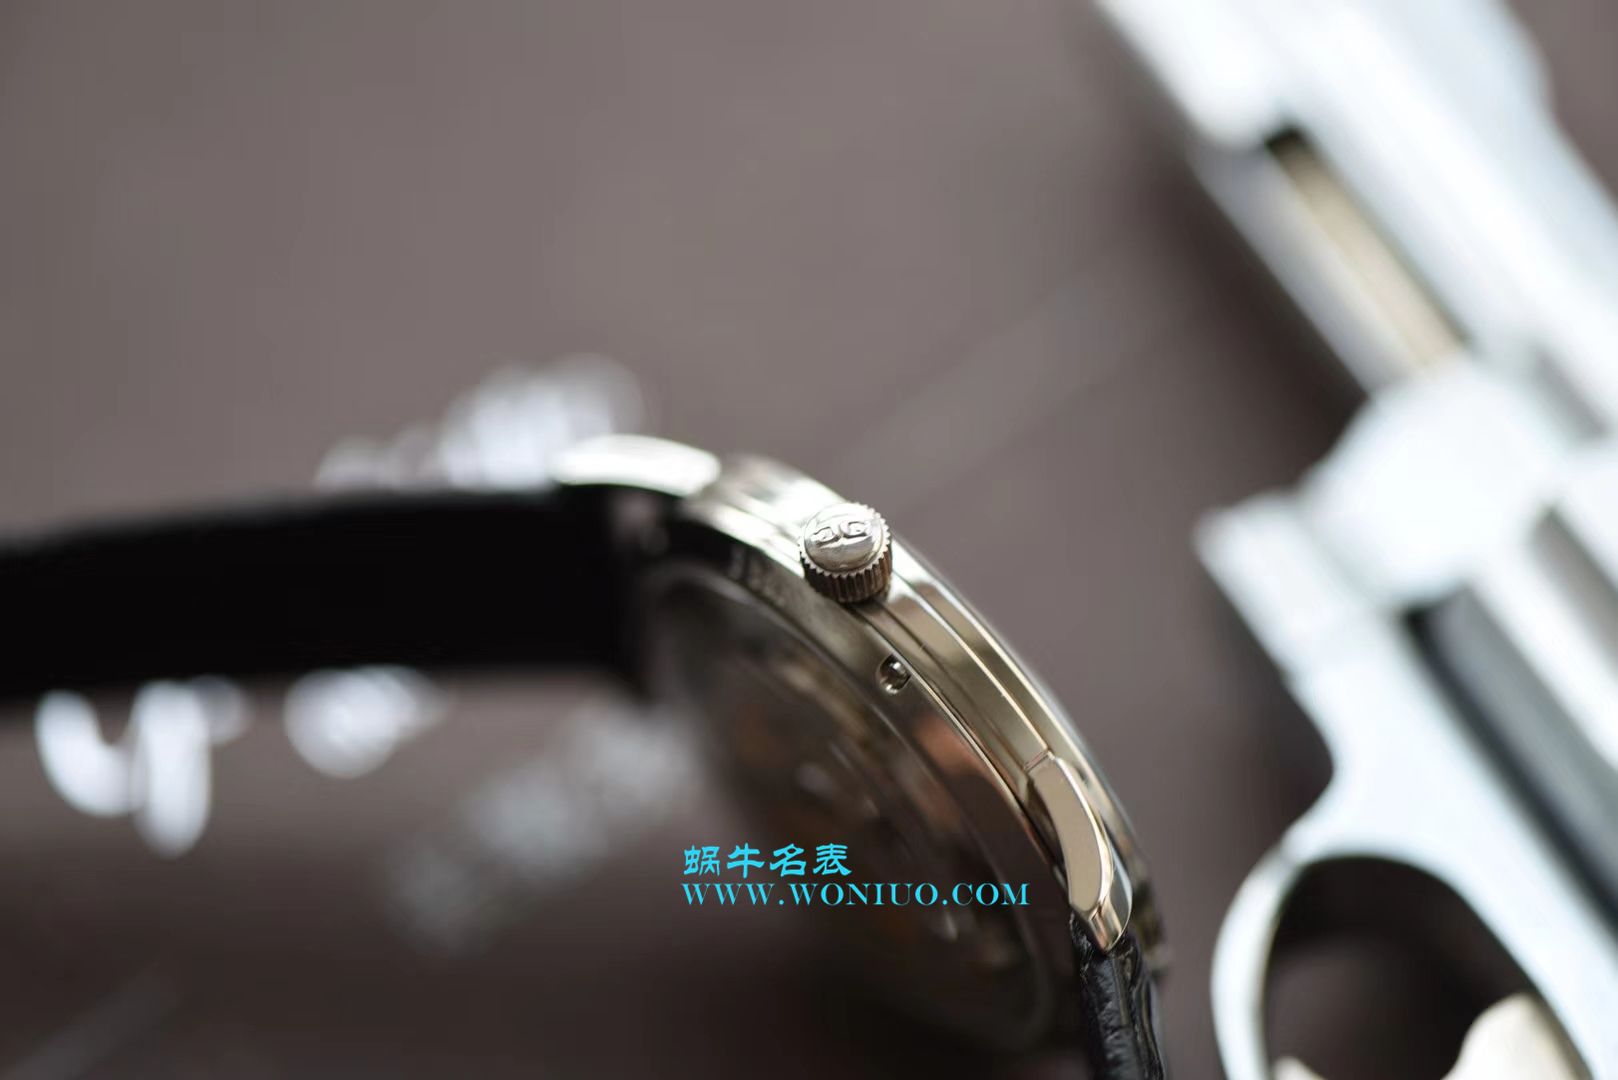 【YL一比一超A高仿手表】格拉苏蒂原创复古系列1-39-52-03-02-04腕表 / GLA052